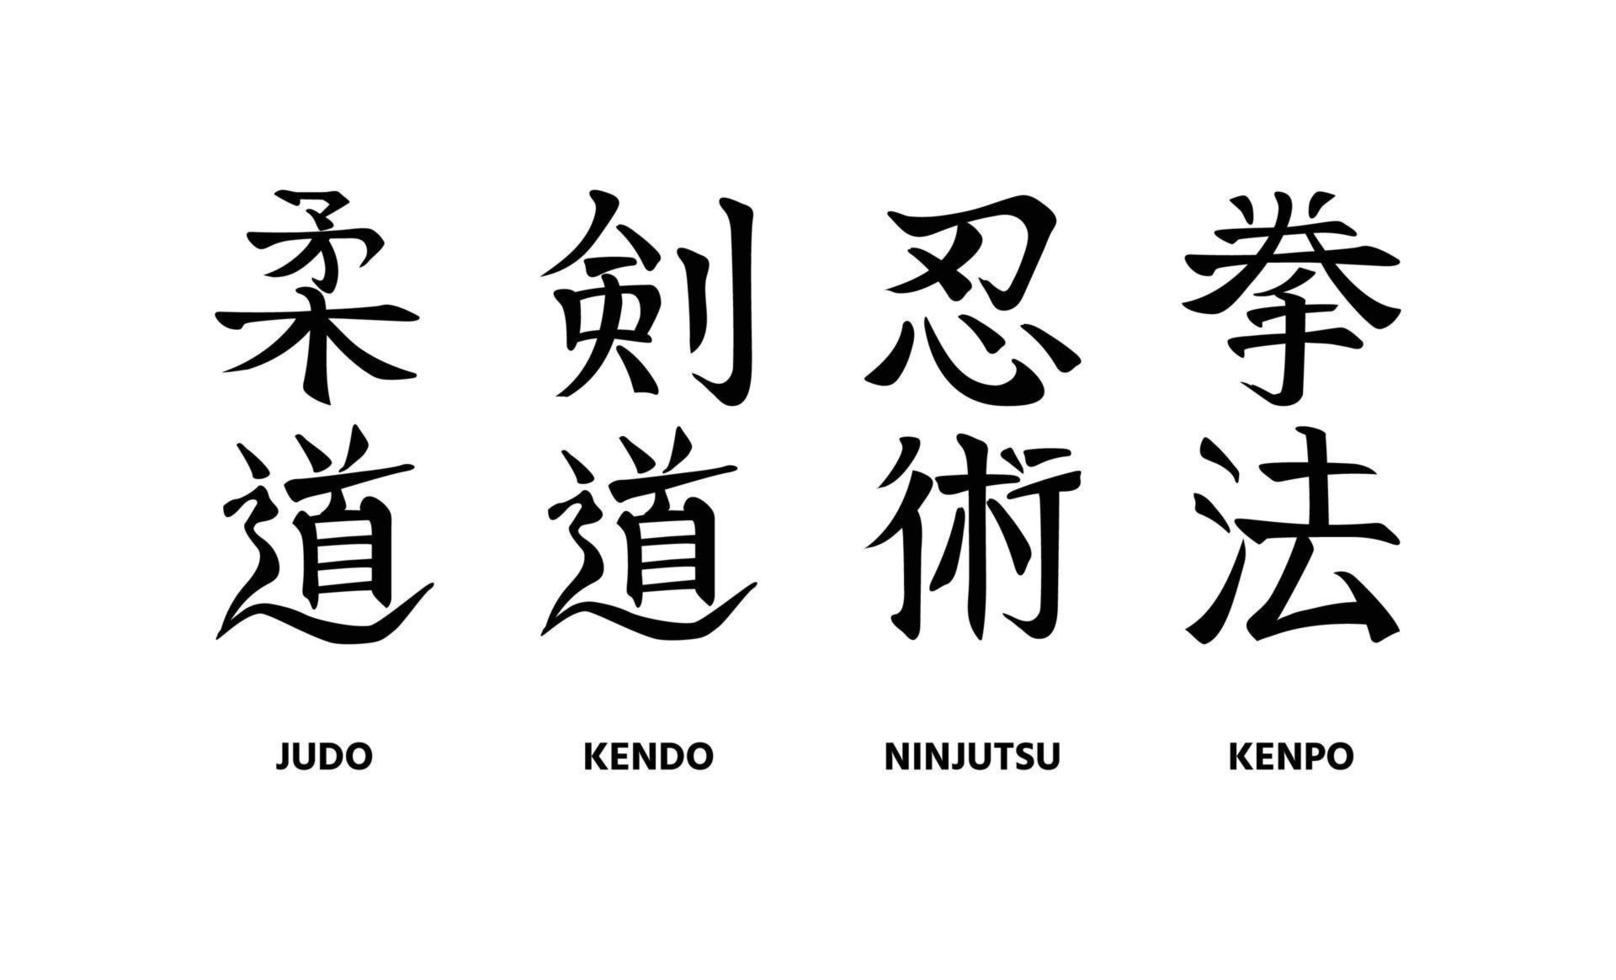 judo, kendo, ninjutsu, Kenpo. impostato di mano scritto nomi di tradizionale giapponese marziale arti vettore